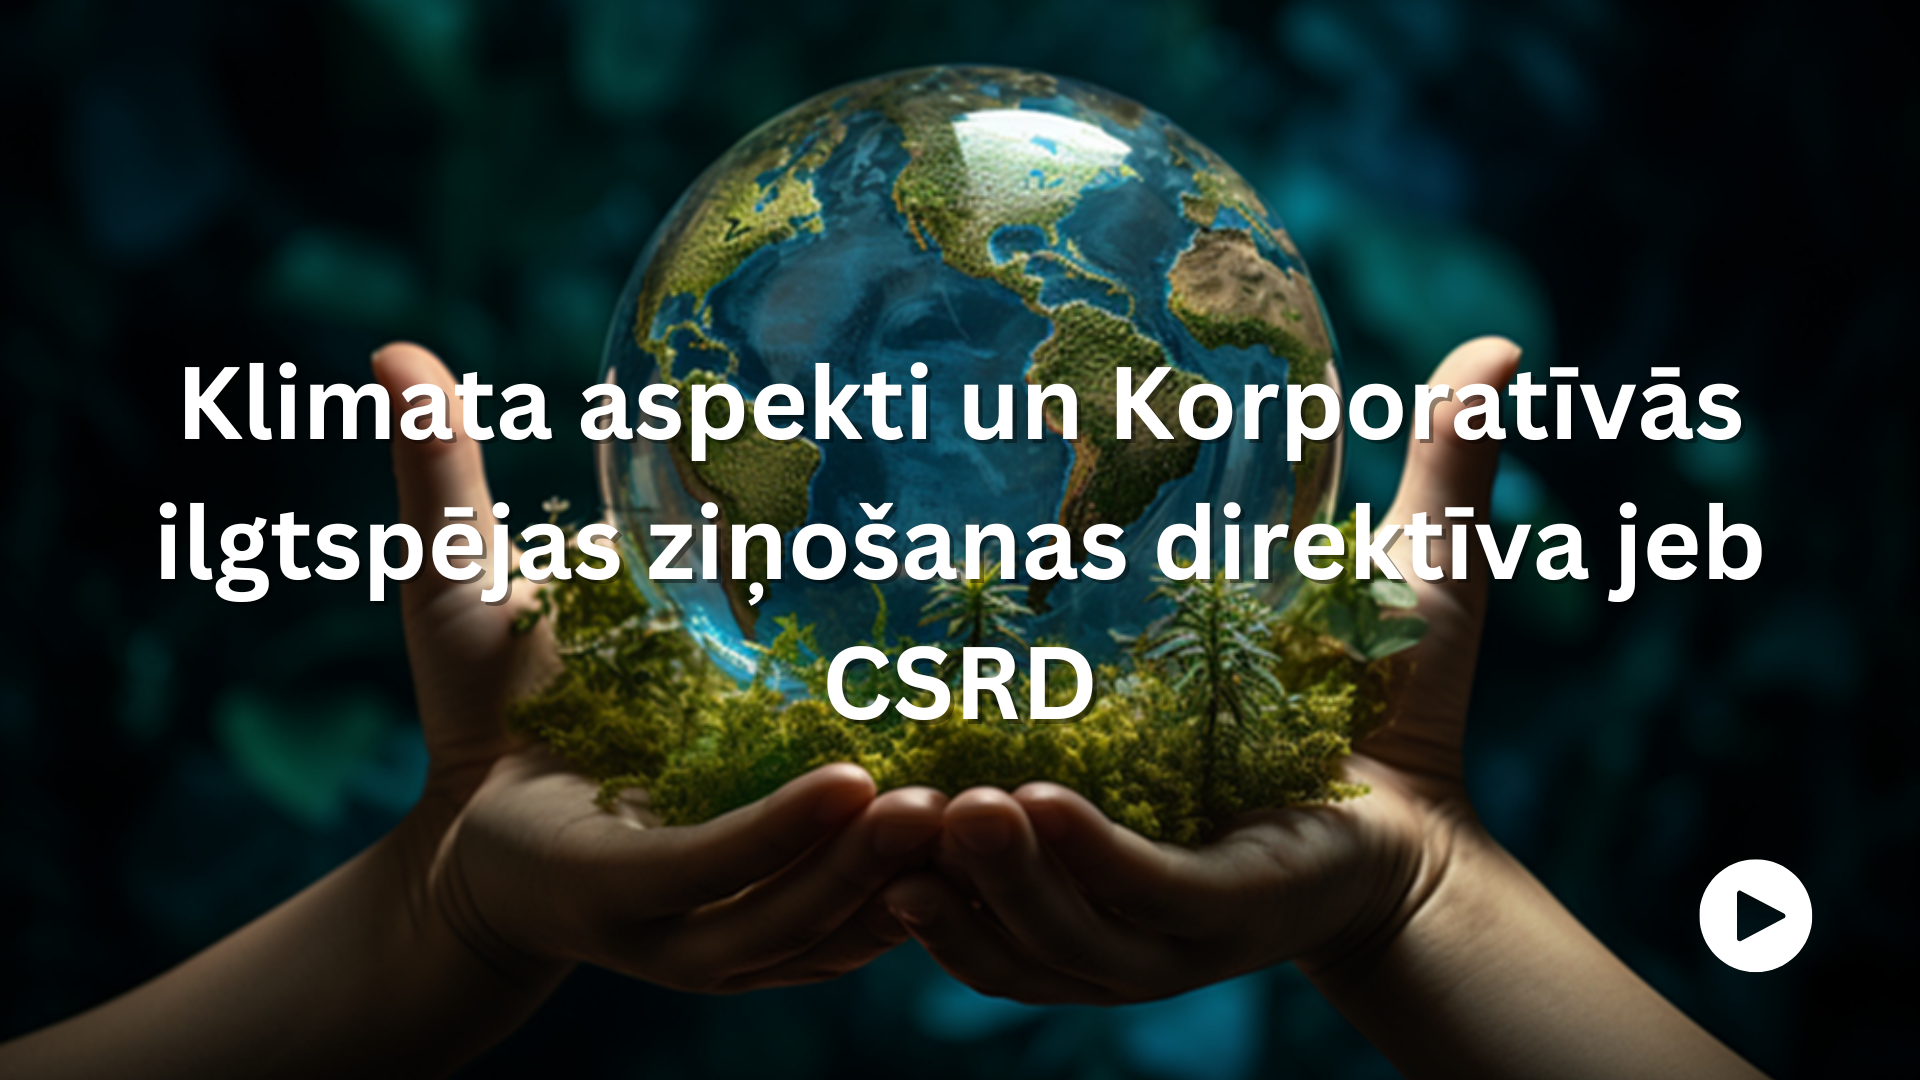 Klimata aspekti un Korporatīvās ilgtspējas ziņošanas direktīva jeb CSRD. Attēlā cilvēka plaukstās ir stikla lode, kura imitē zemeslodi